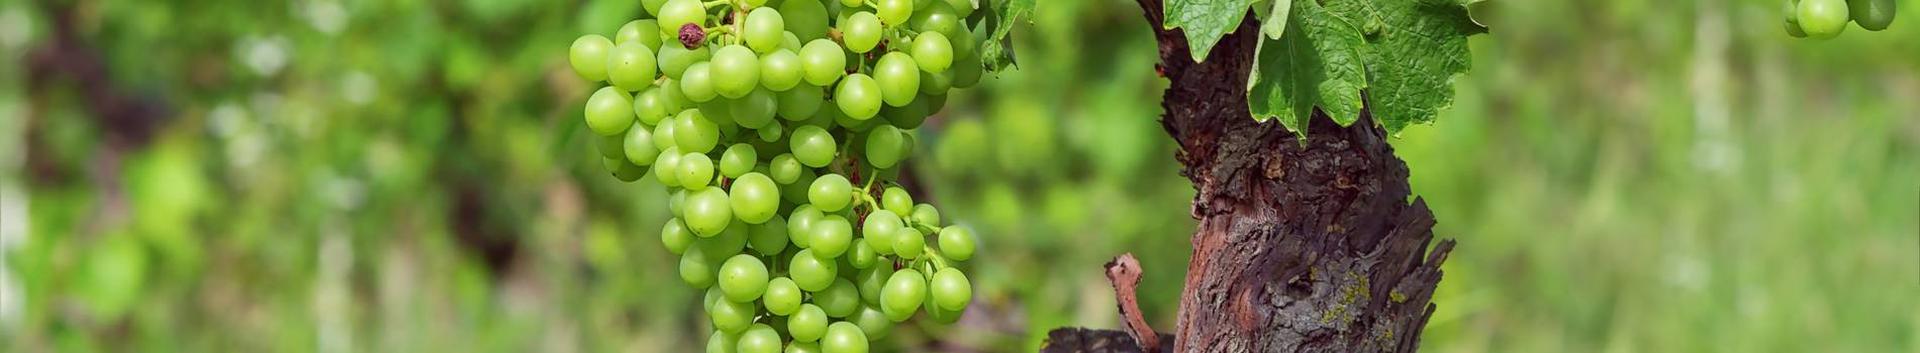 Heinzi Veinikelder OÜ põhitegevuseks on eestimaisest toorainest marja-ja puuviljaveinide tootmine.